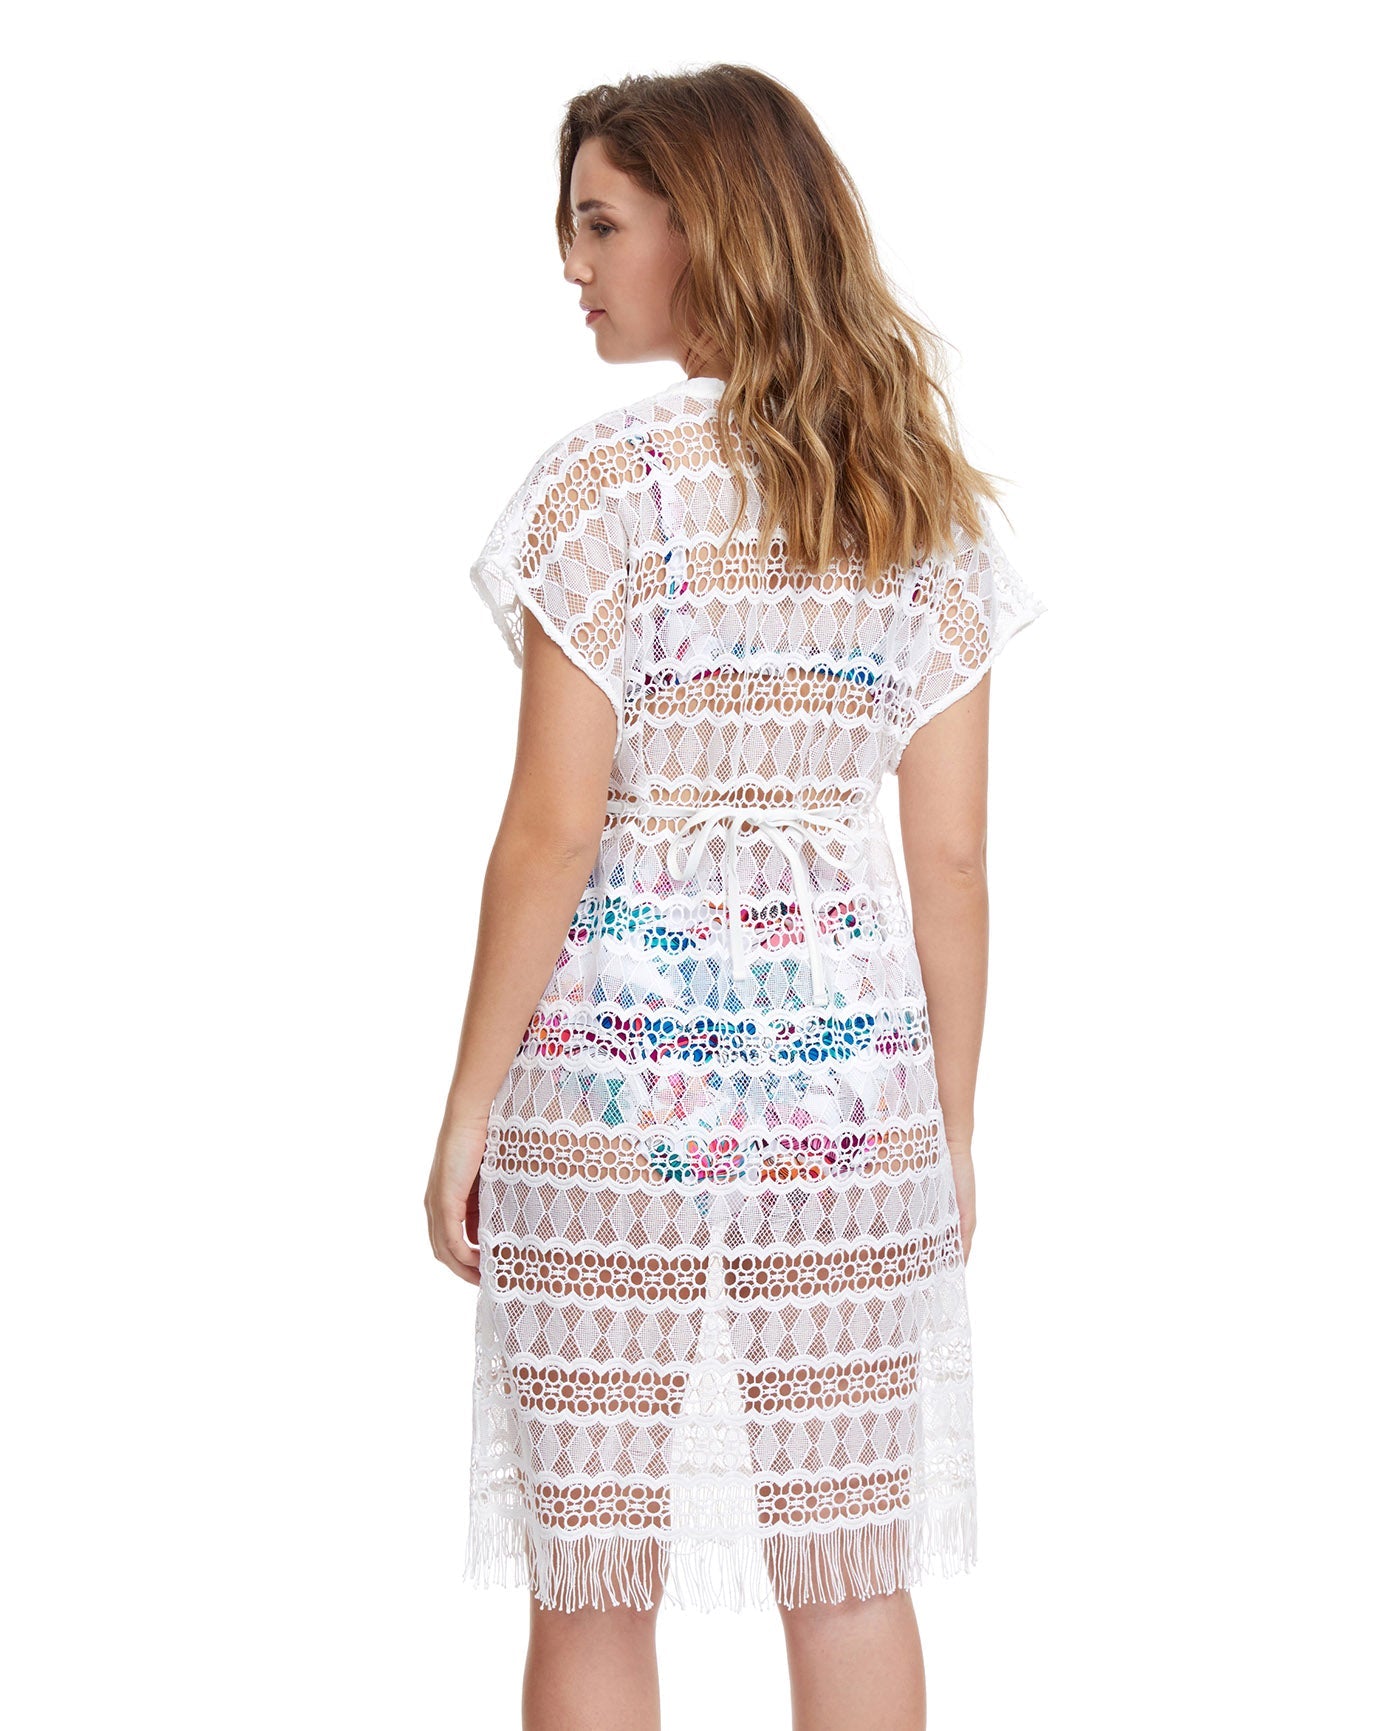 Back View Of Profile By Gottex Tutti Frutti Crochet Cover Up Dress | PROFILE TUTTI FRUTTI WHITE